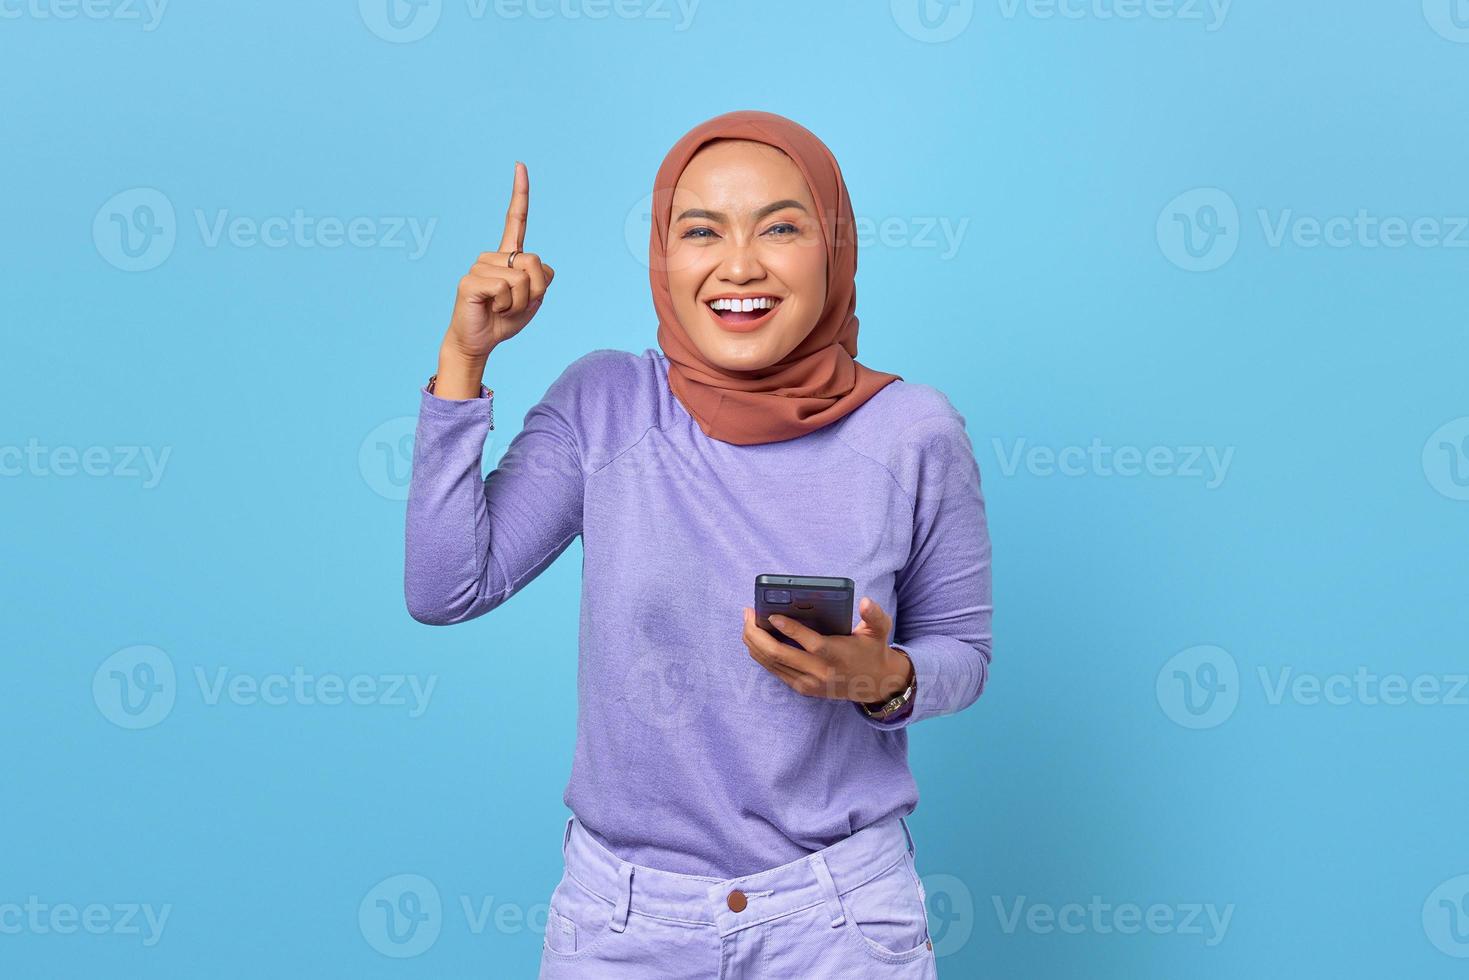 retrato de uma jovem mulher asiática sorridente segurando um telefone celular enquanto levanta o dedo sobre um fundo azul foto